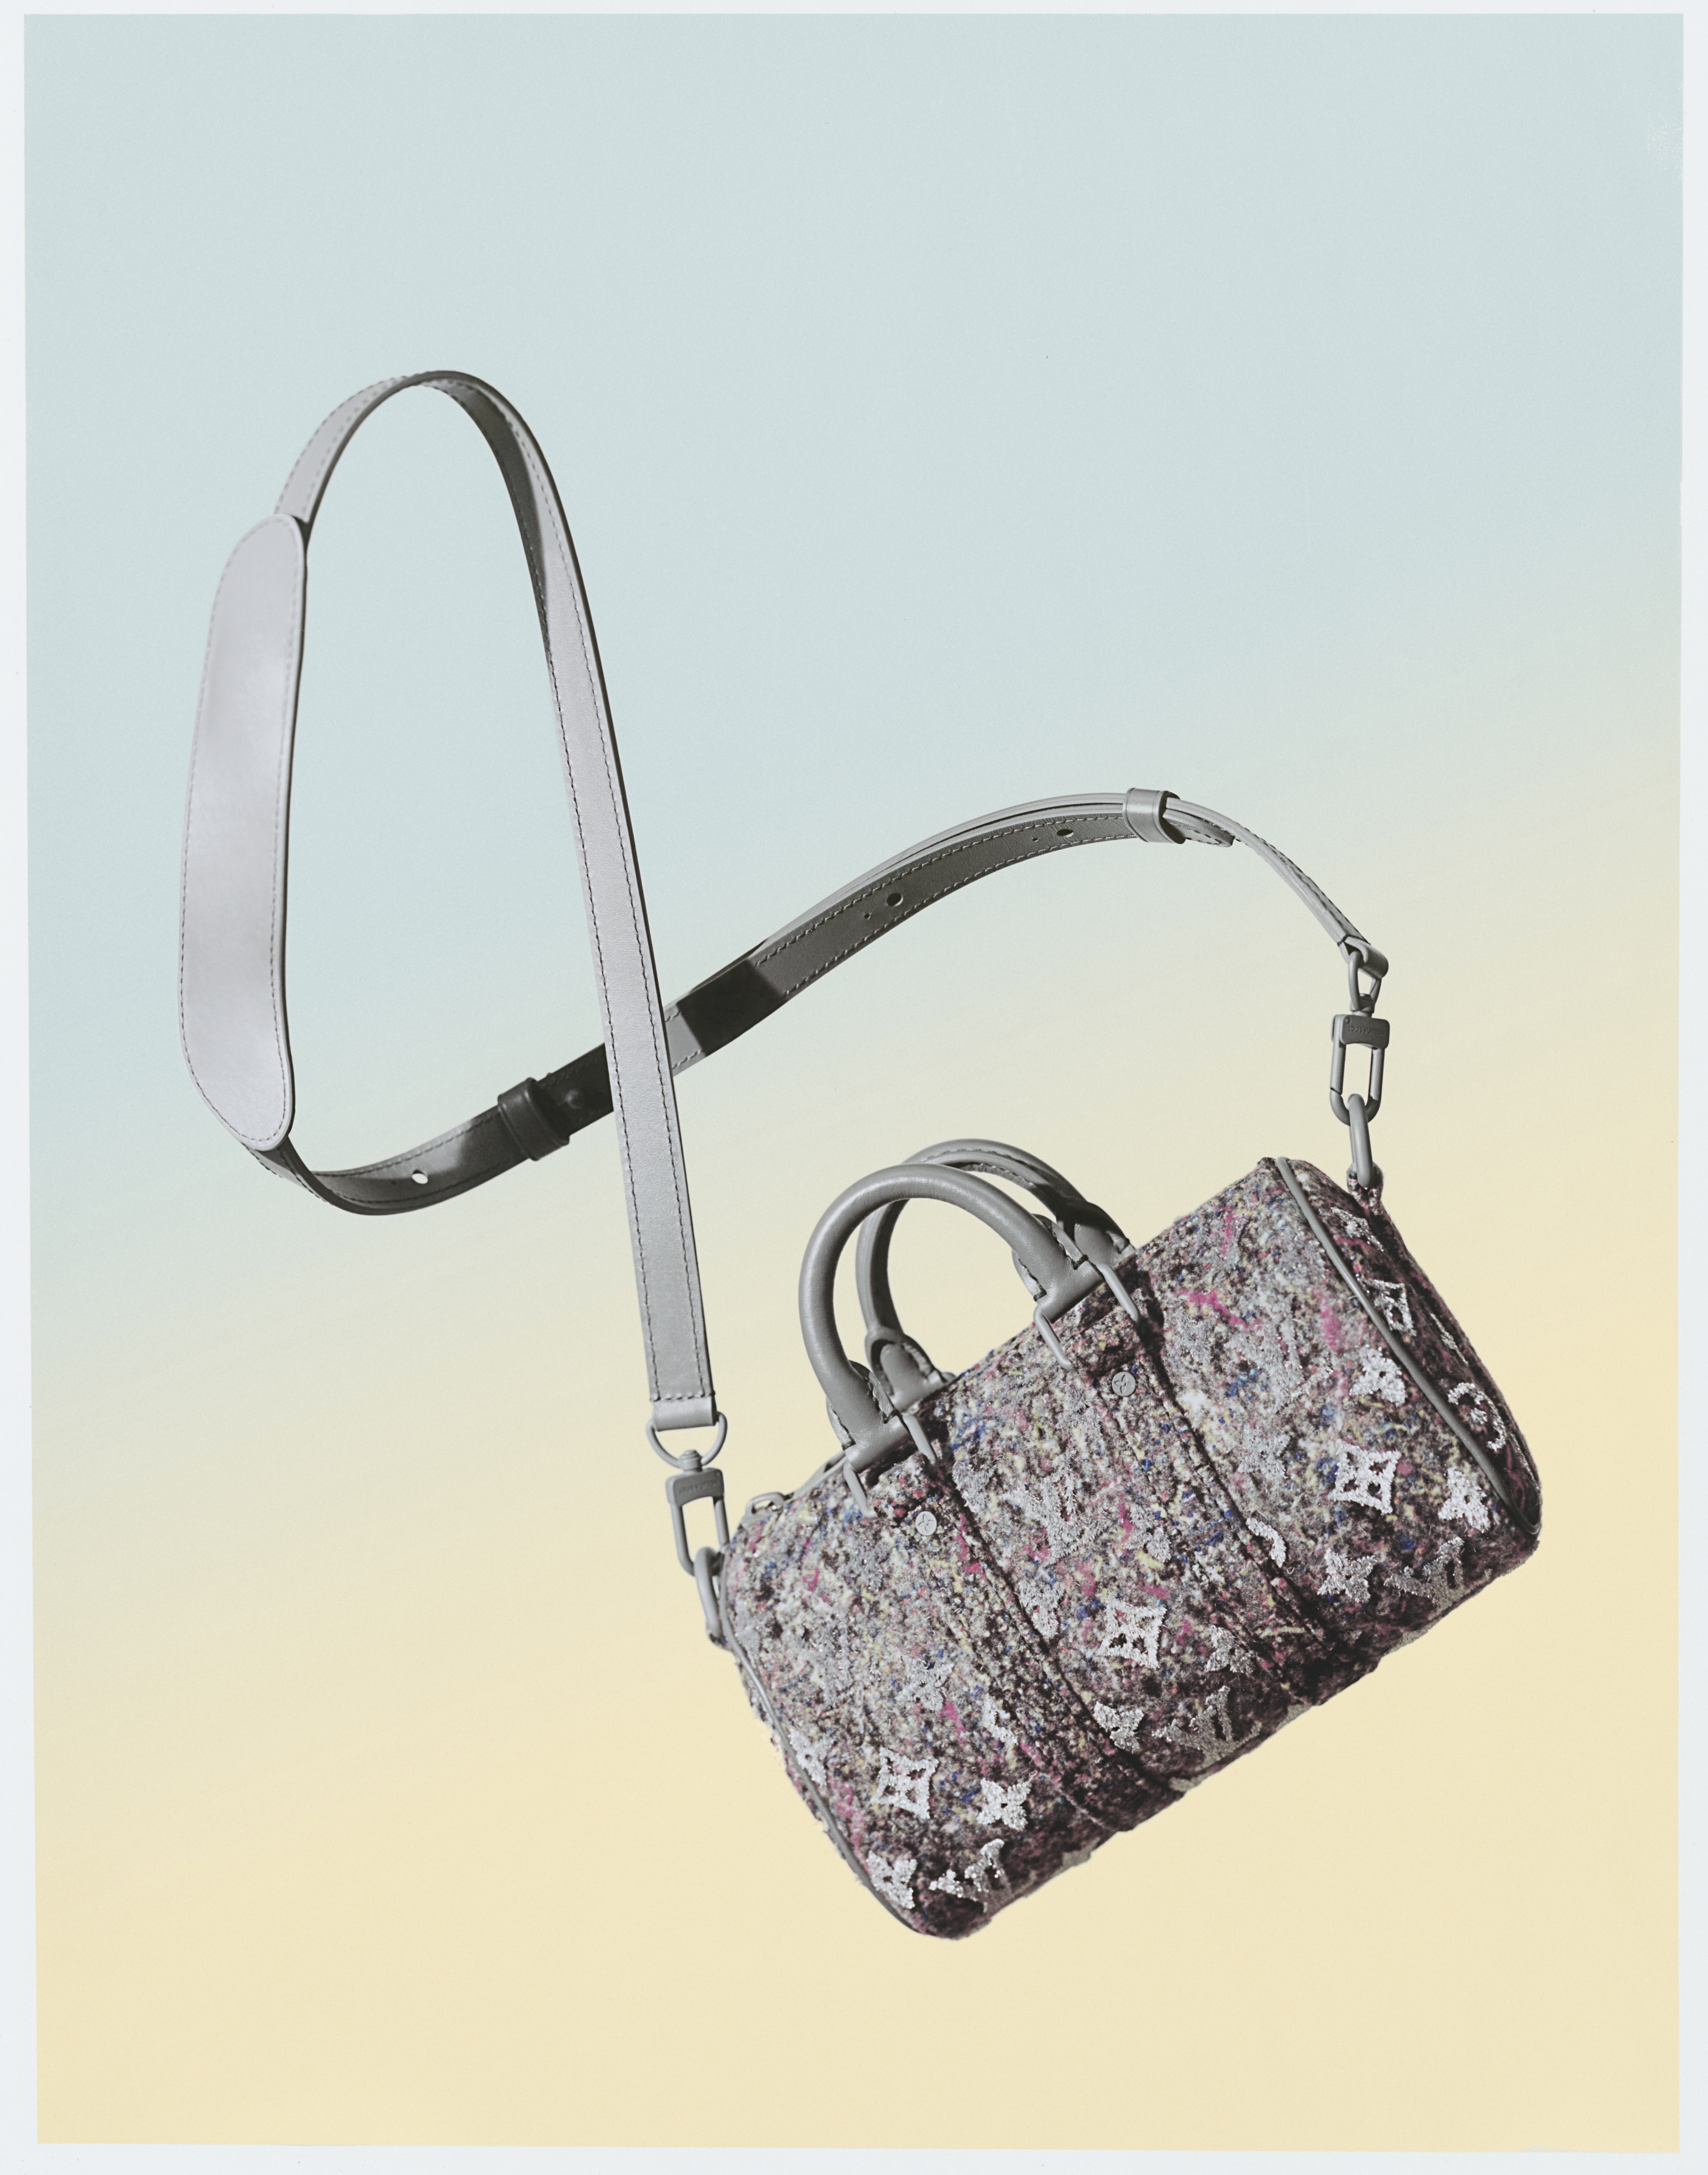 A bag from Louis Vuitton's felt line